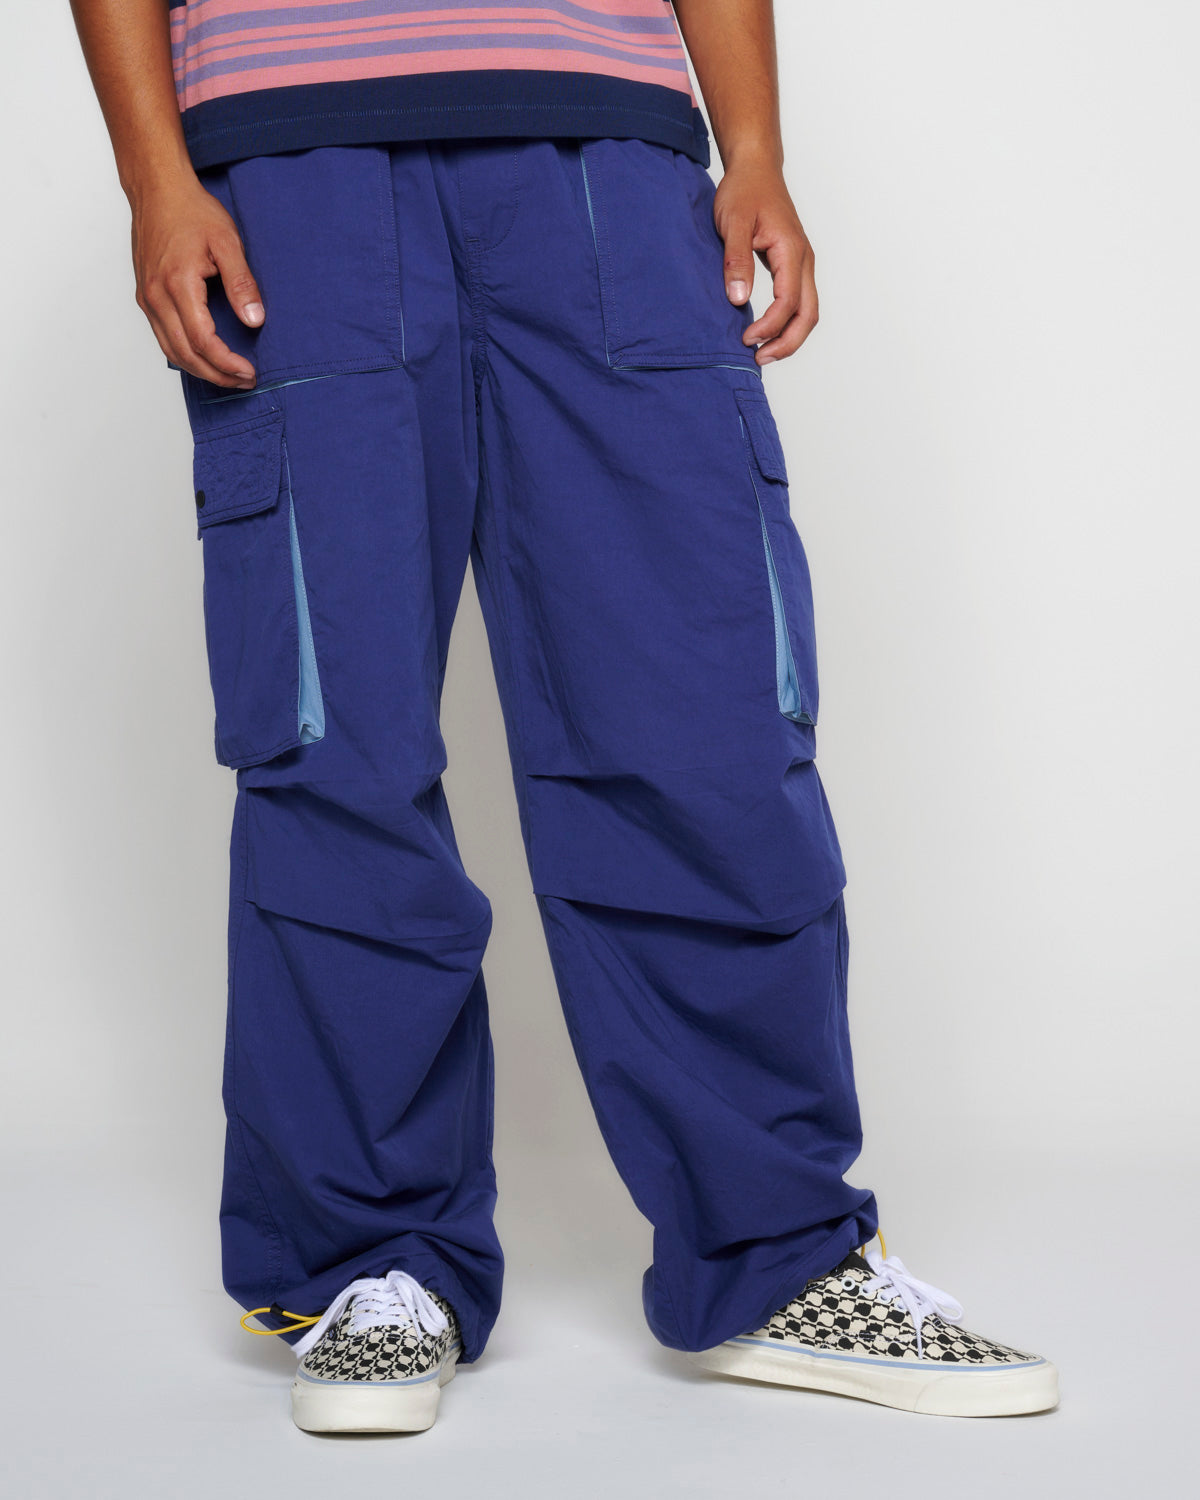 Adjustable Skate Pant - Blue 4